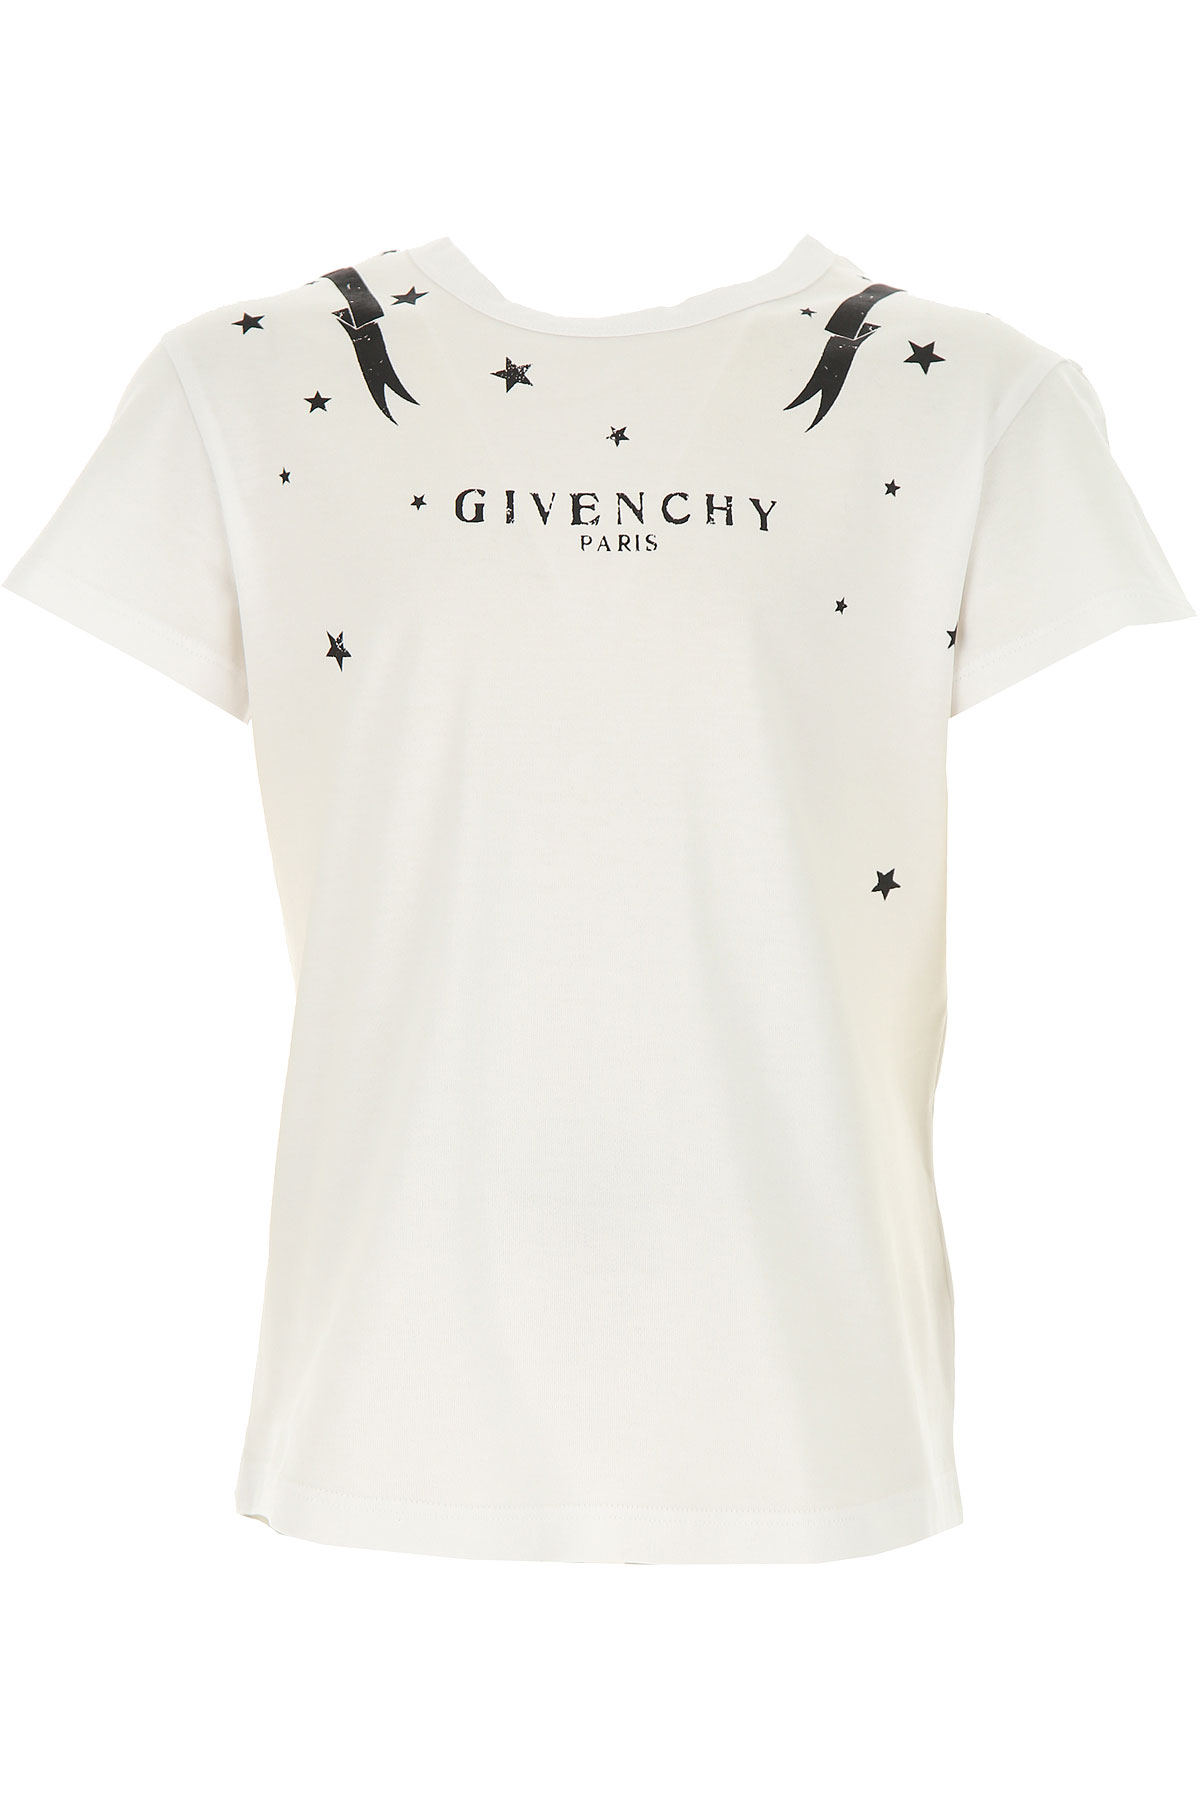 Givenchy Kinder T-Shirt für Mädchen, Weiss, Baumwolle, 2017, 10Y 12Y 4Y 6Y 8Y